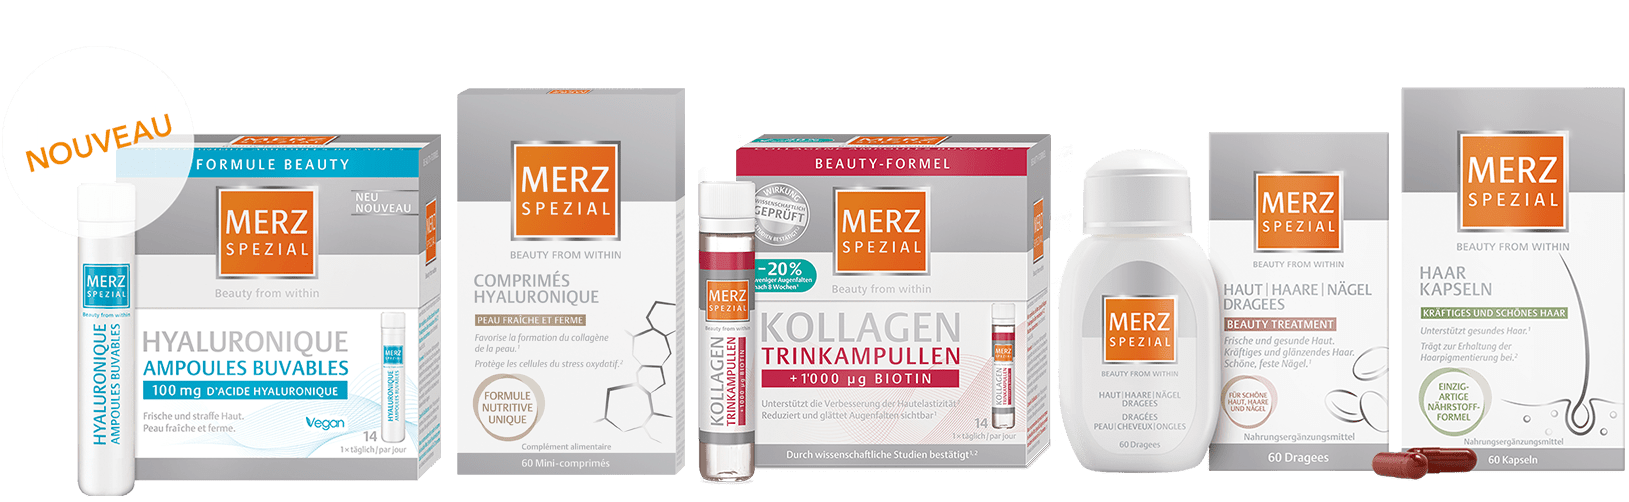 Merz-Spezial_Produktesortiment